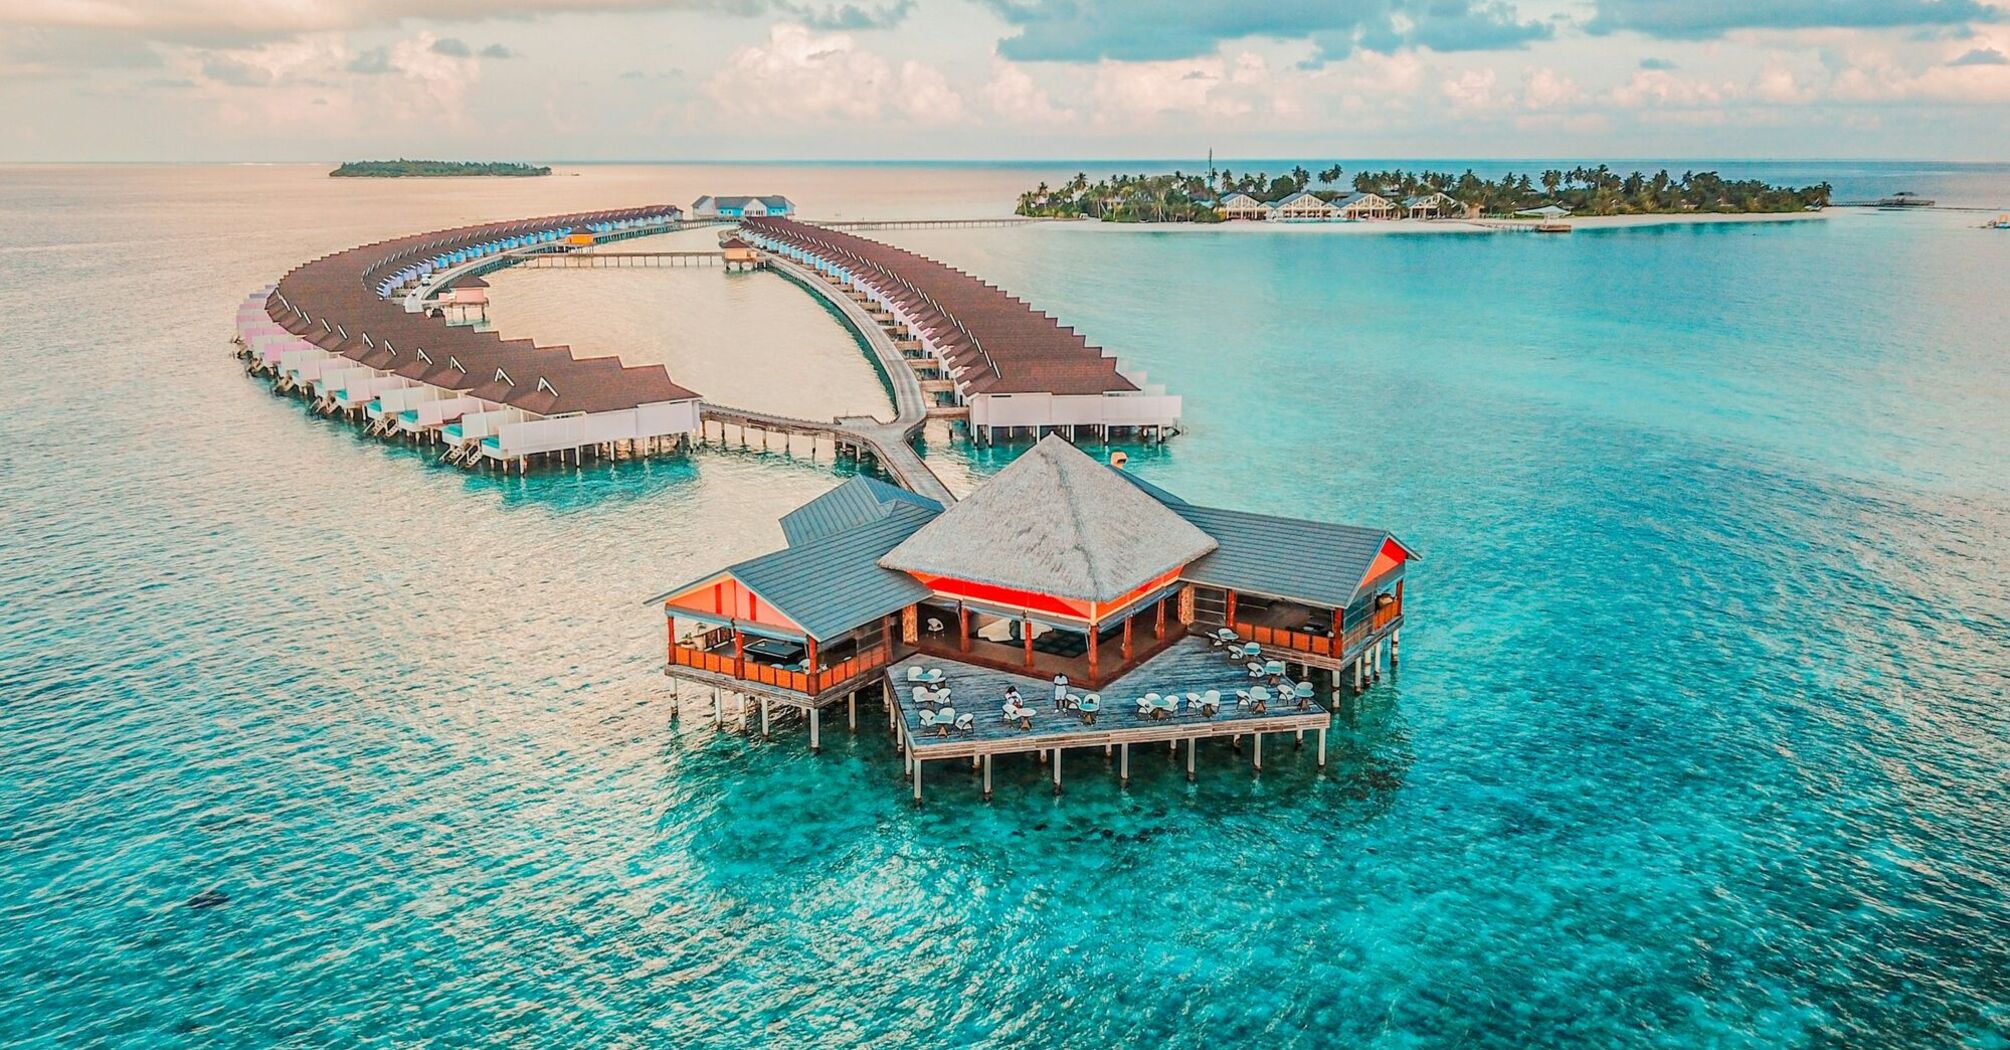 Water villas at Maldives